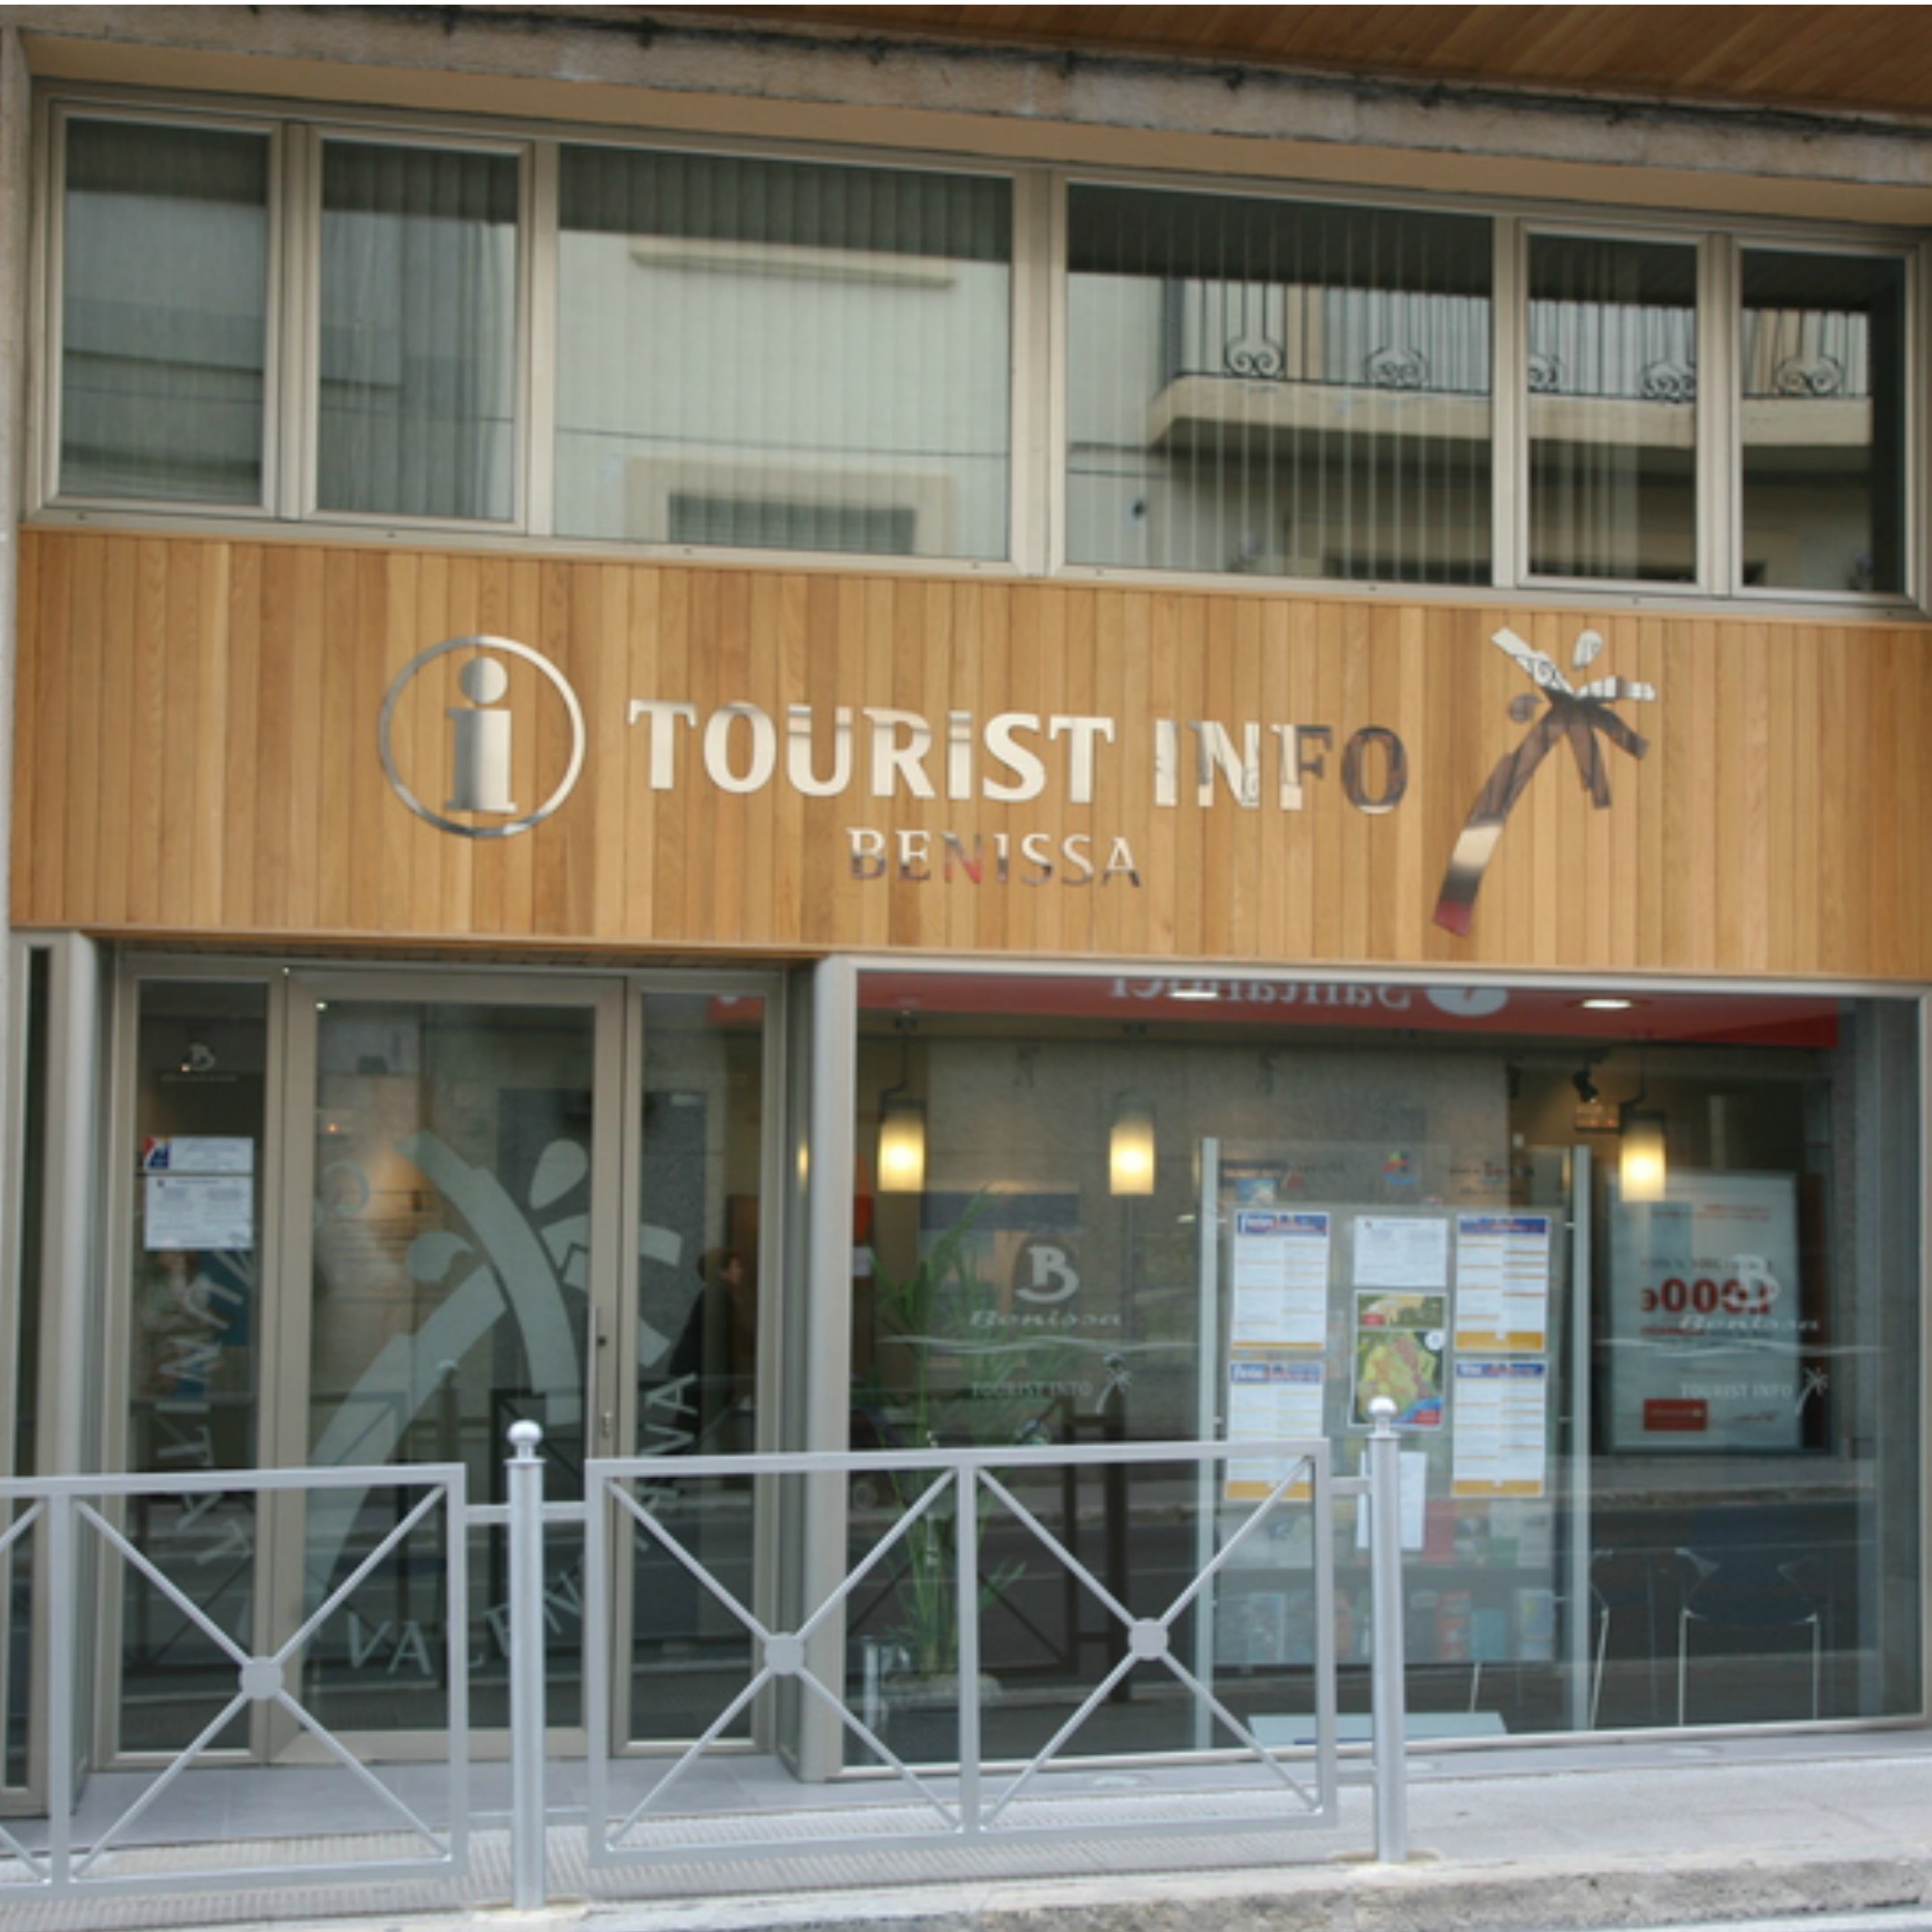 Tourist Info Benissa